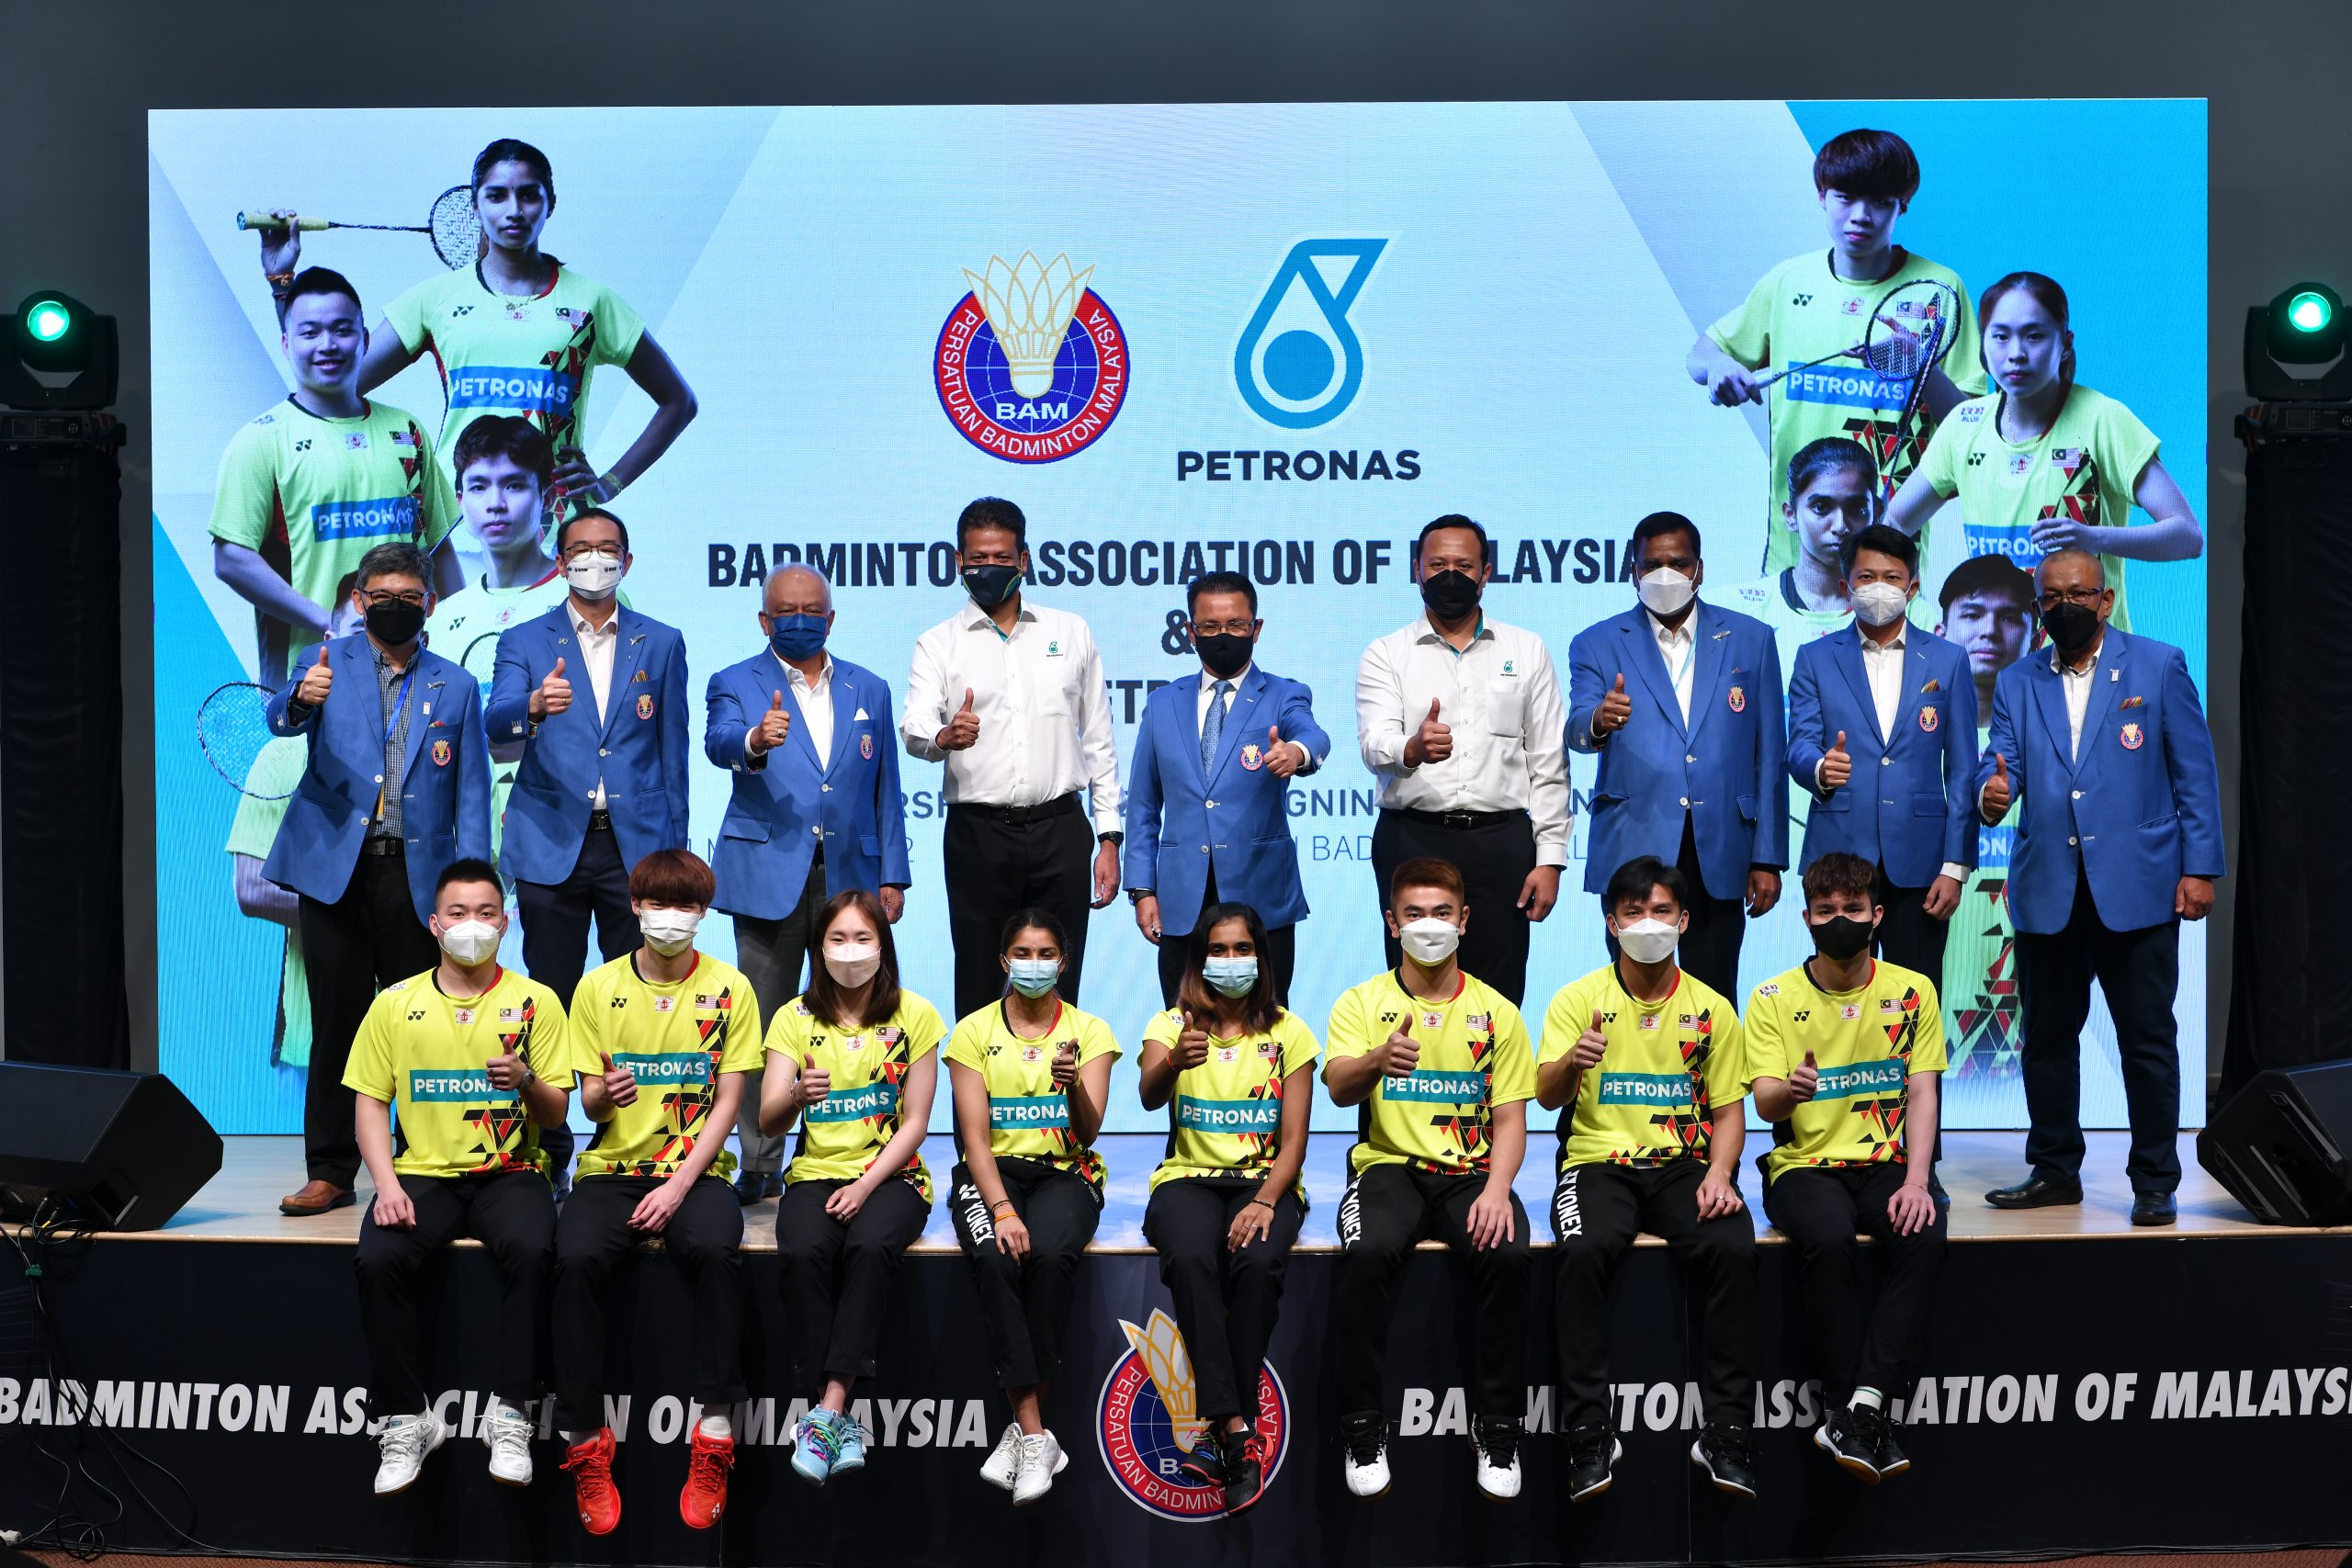 PETRONAS & BAM Tandatangani Perjanjian Penajaan 3 Tahun, Bertujuan Tingkatkan Prestasi Badminton Malaysia